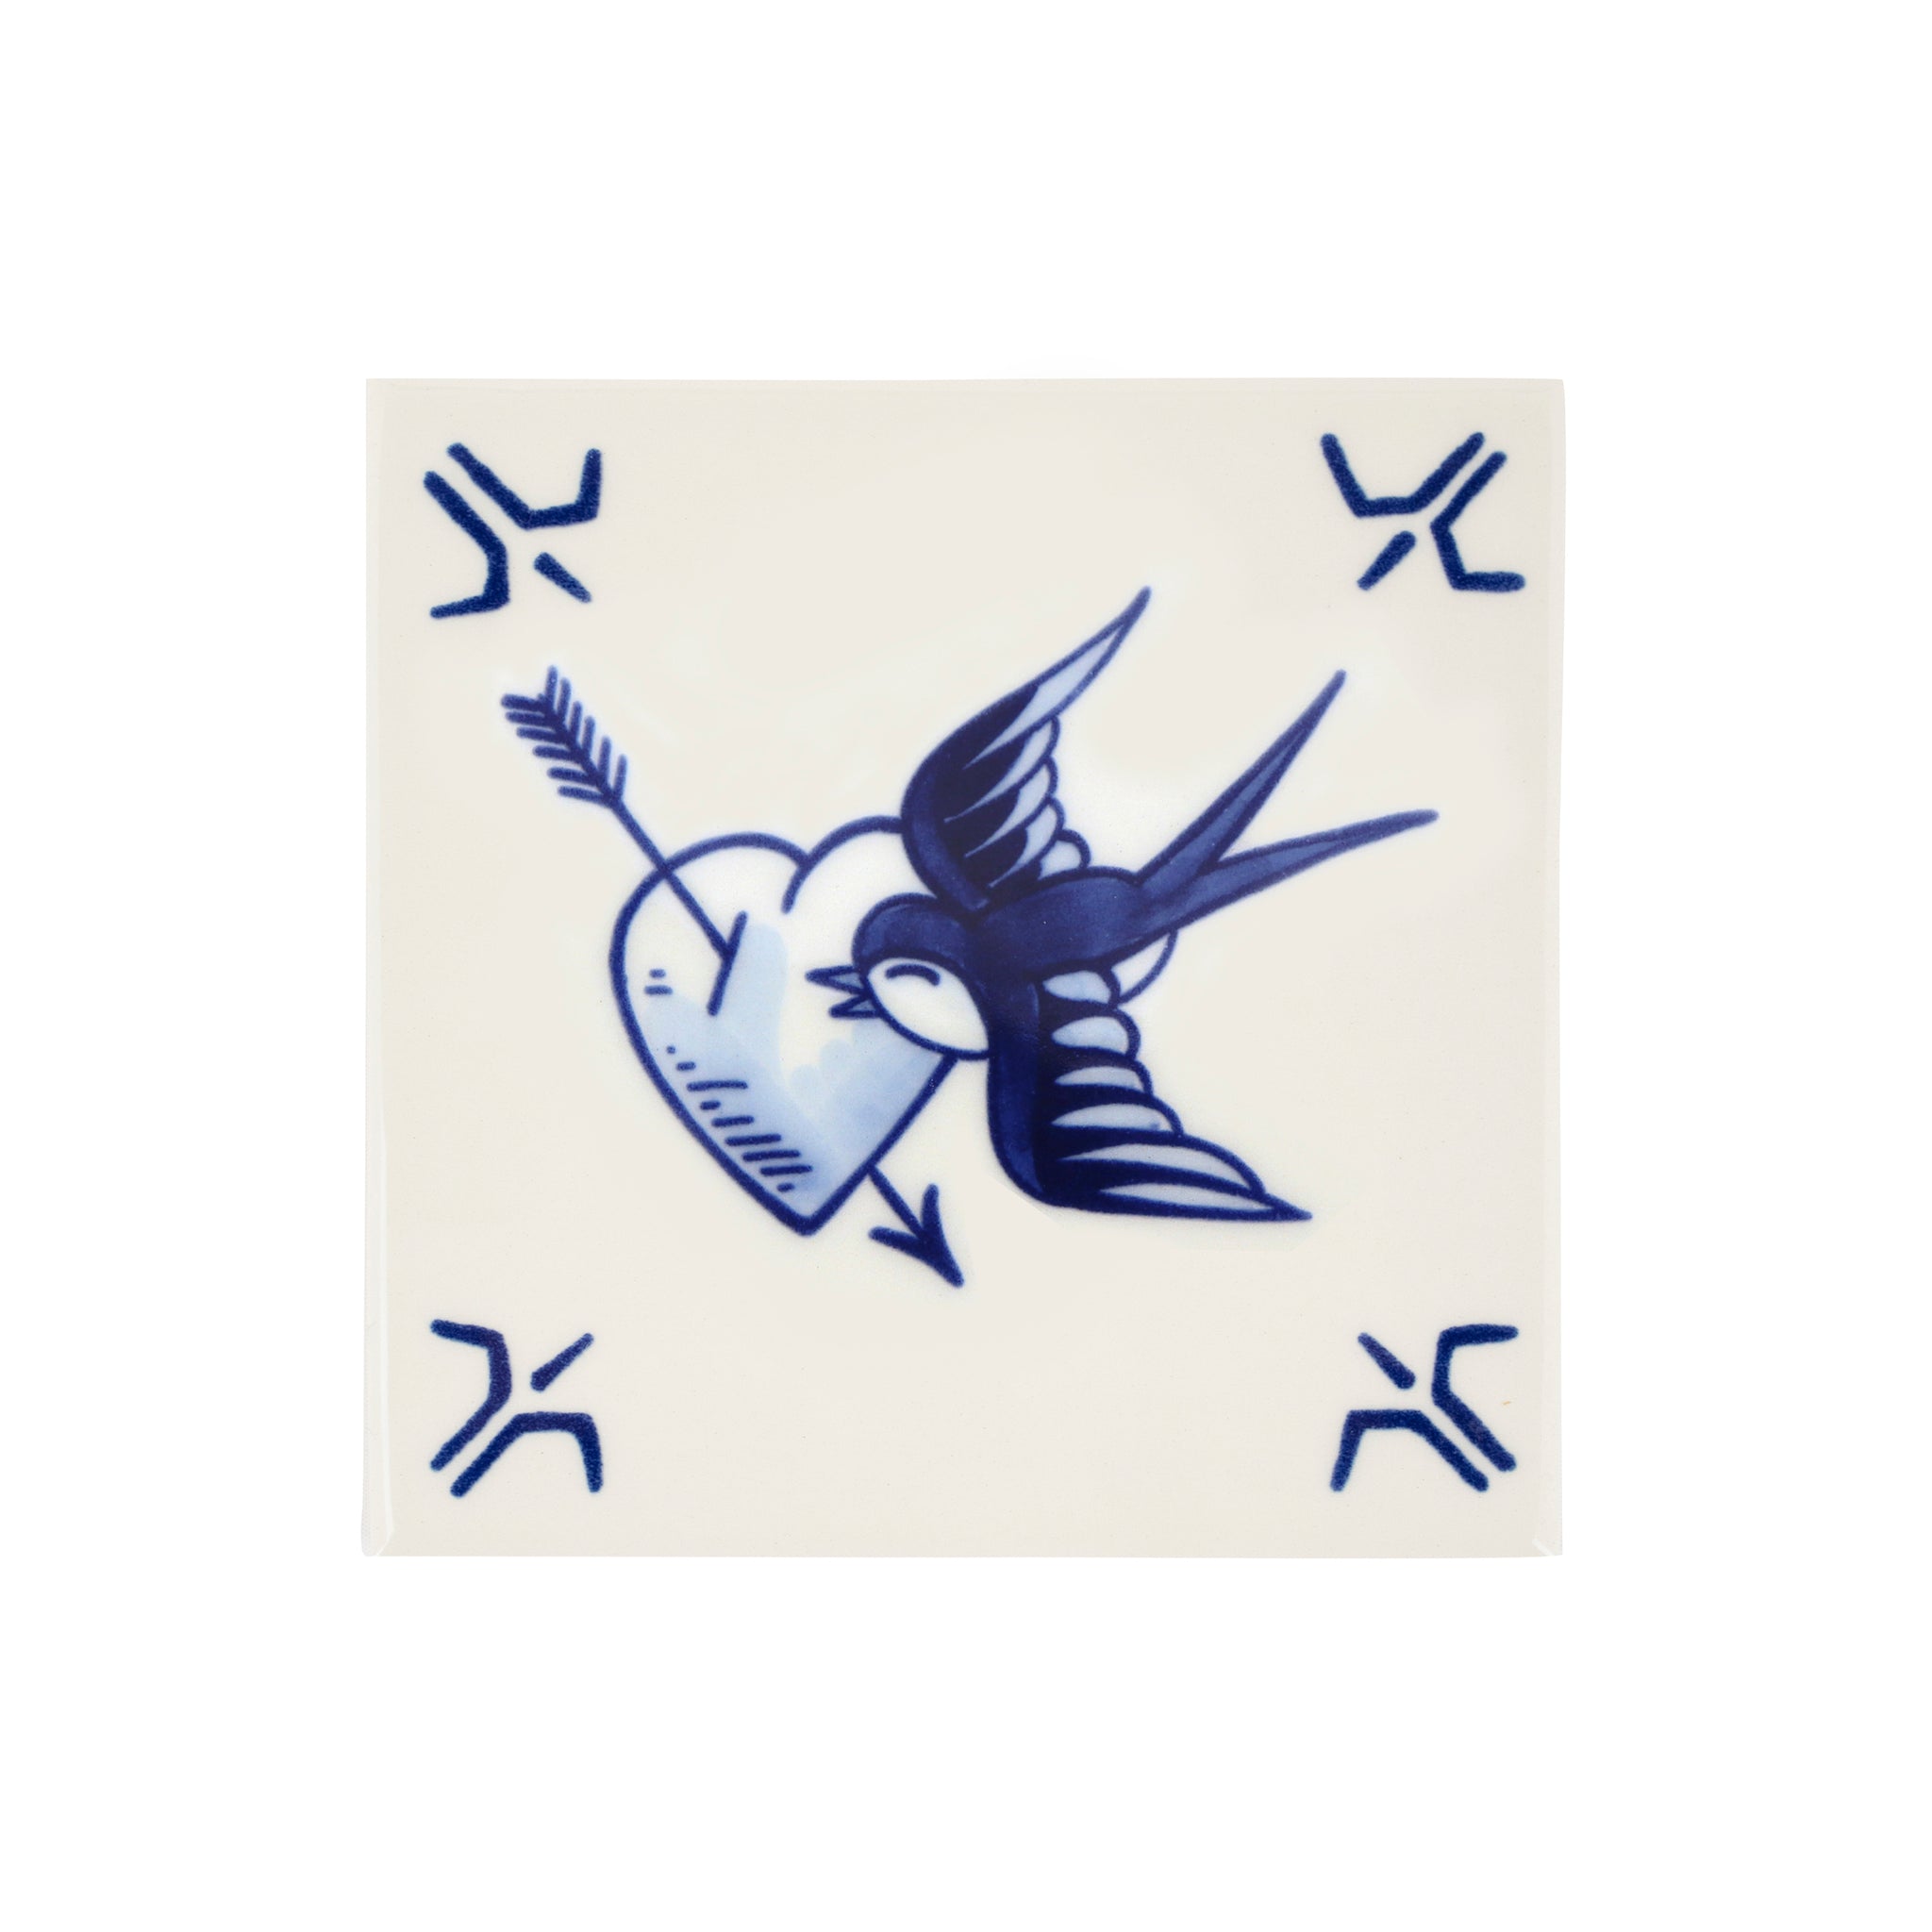 De Schiffmacher Royal Blue Tattoo collectie is een unieke samenwerking tussen tattoo artist Henk Schiffmacher en Royal Delft - Porcelyne Fles. Prachtige objecten zoals vazen, borden en tegels, waarbij de werelden en de tradities van beide ambachten samenkomen. Rijk aan historie, cultuur, traditie en symboliek.